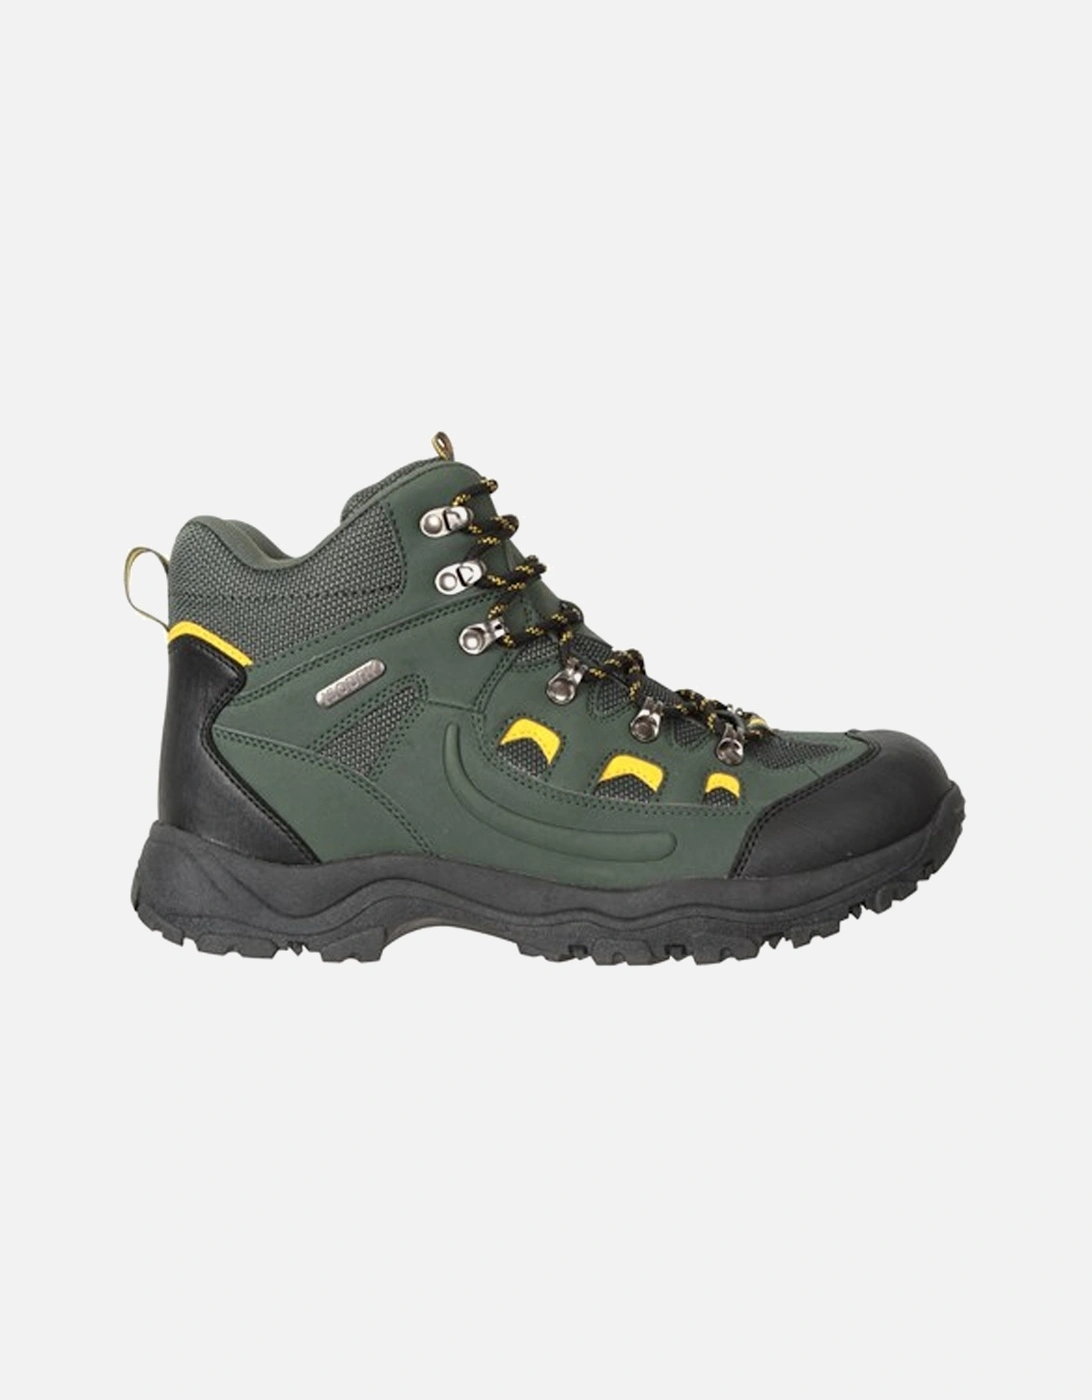 Mens Adventurer Waterproof Walking Boots, 6 of 5